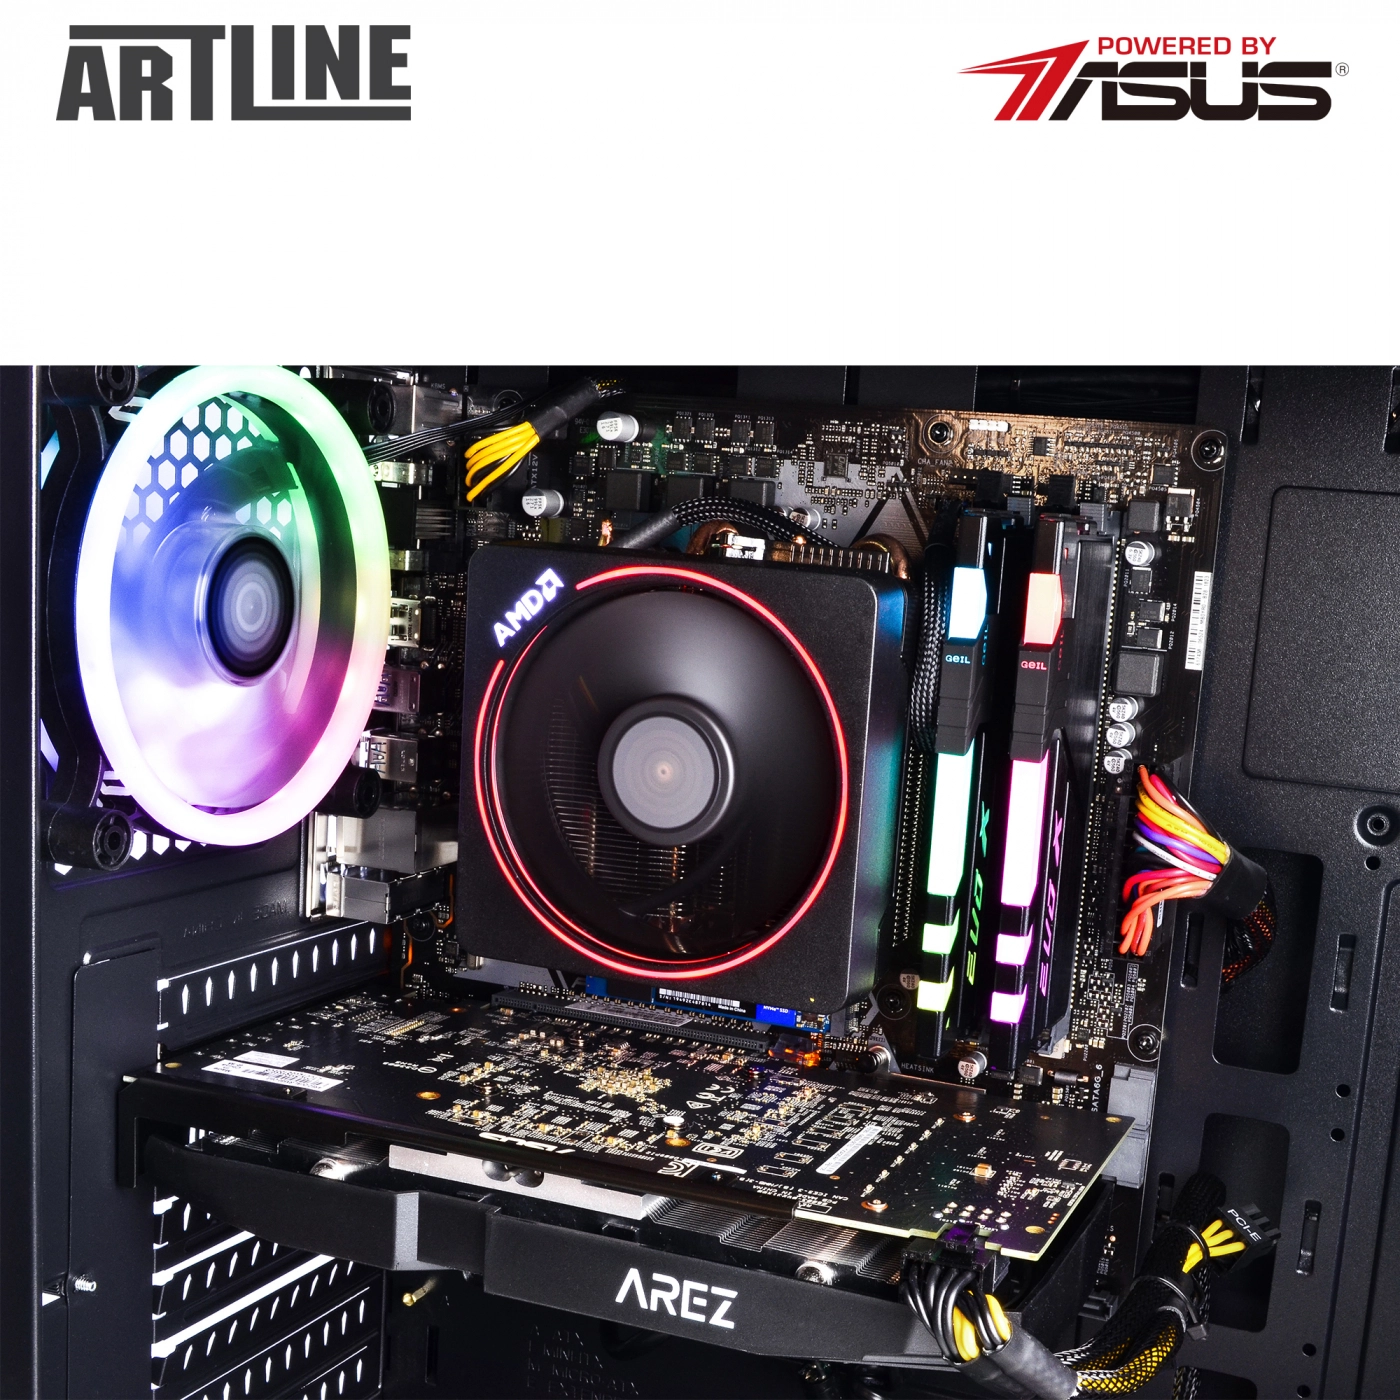 Купить Компьютер ARTLINE Gaming X63v12 - фото 3